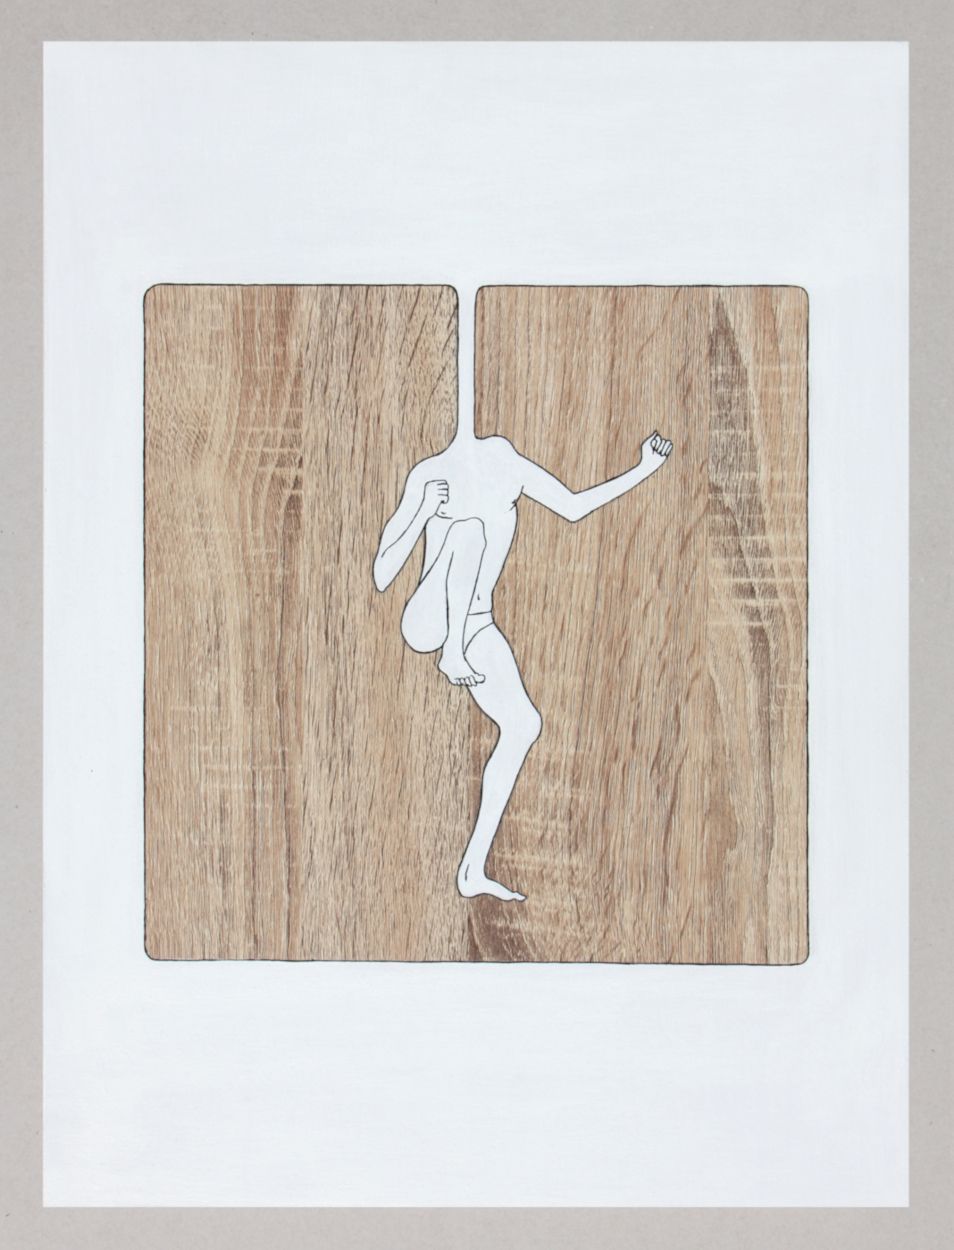 Acrylique, encre de chine sur porte de cuisine, 44 x 38 cm, 2020